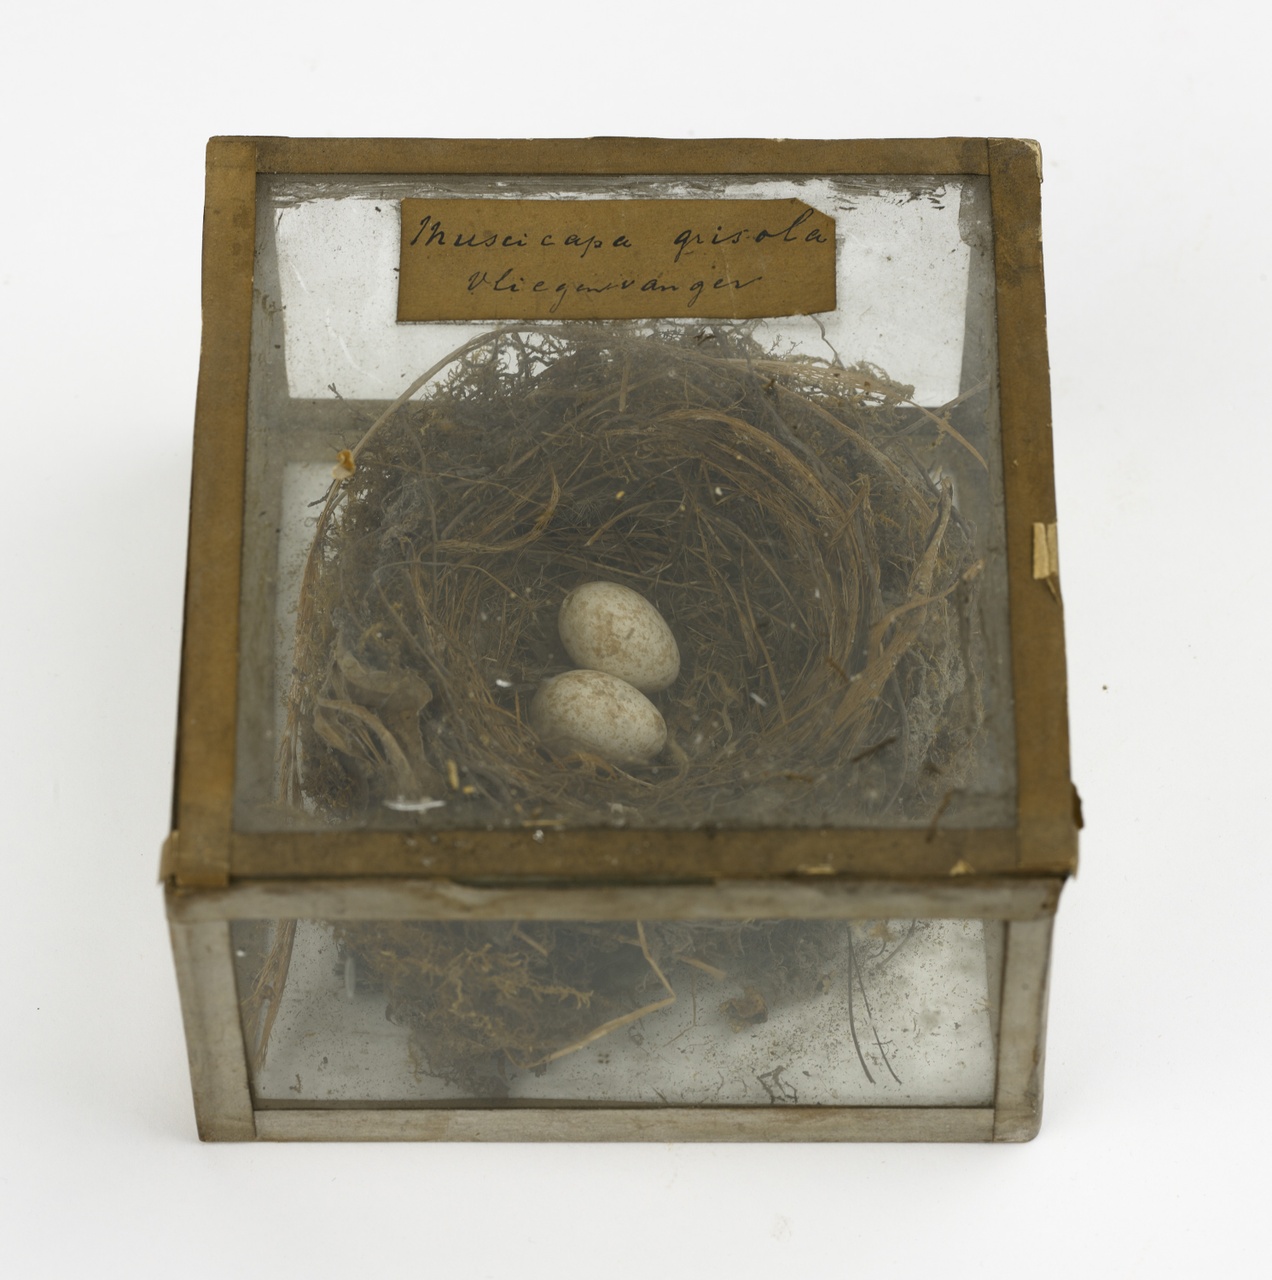 Nest met eieren van de grauwe vliegenvanger